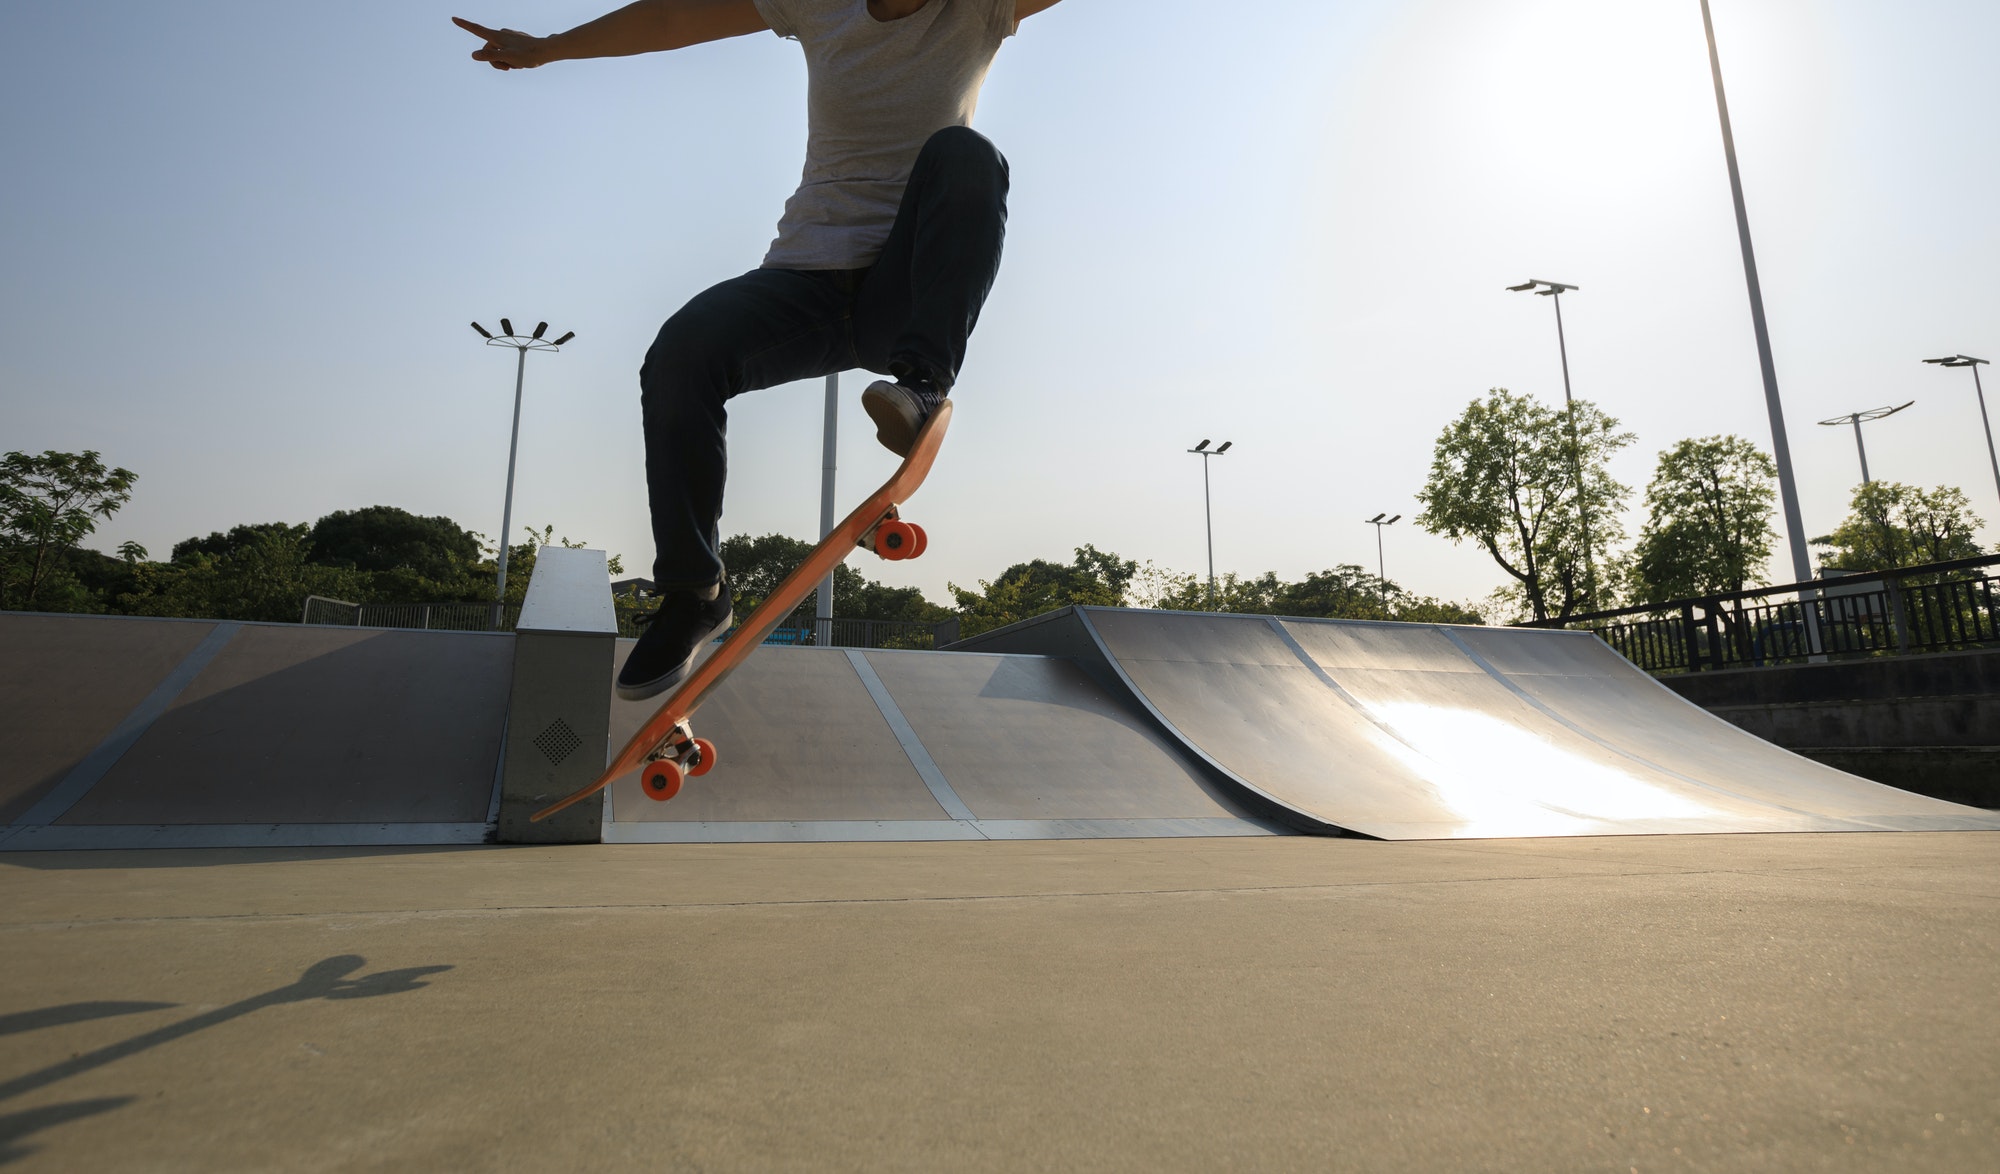 woman skateboarding at skatepark